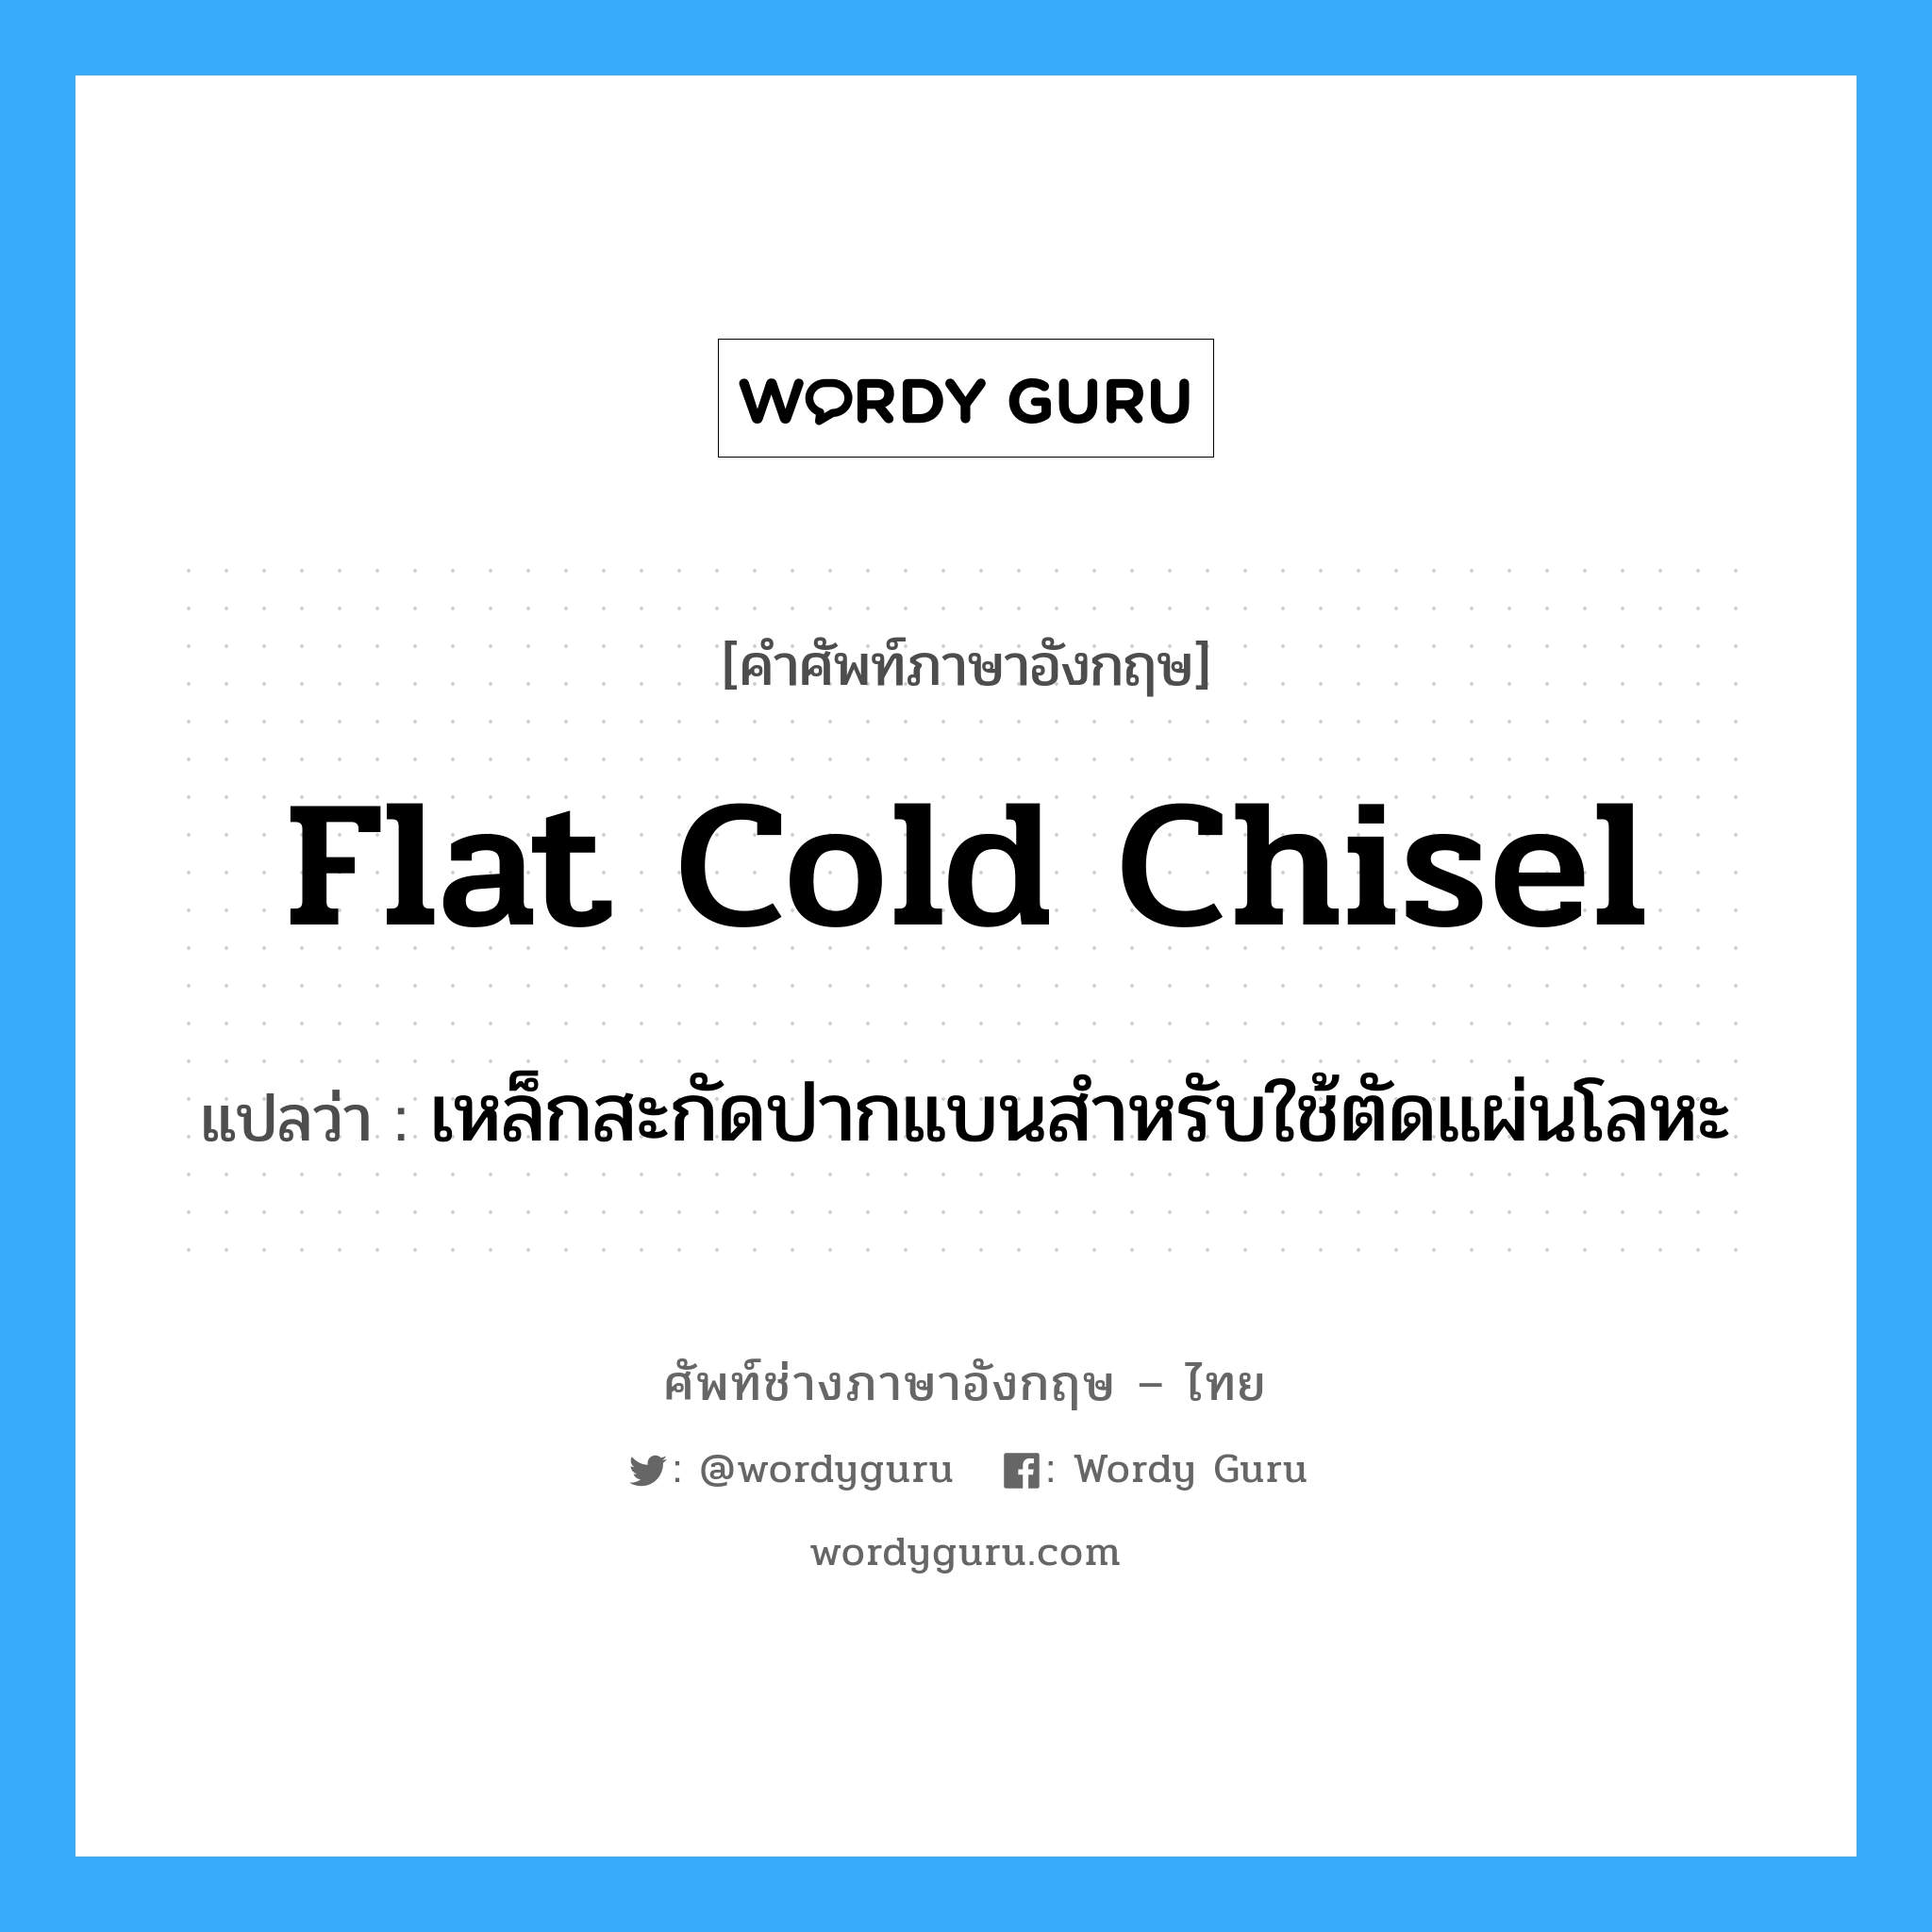 flat-cold chisel แปลว่า?, คำศัพท์ช่างภาษาอังกฤษ - ไทย flat cold chisel คำศัพท์ภาษาอังกฤษ flat cold chisel แปลว่า เหล็กสะกัดปากแบนสำหรับใช้ตัดแผ่นโลหะ